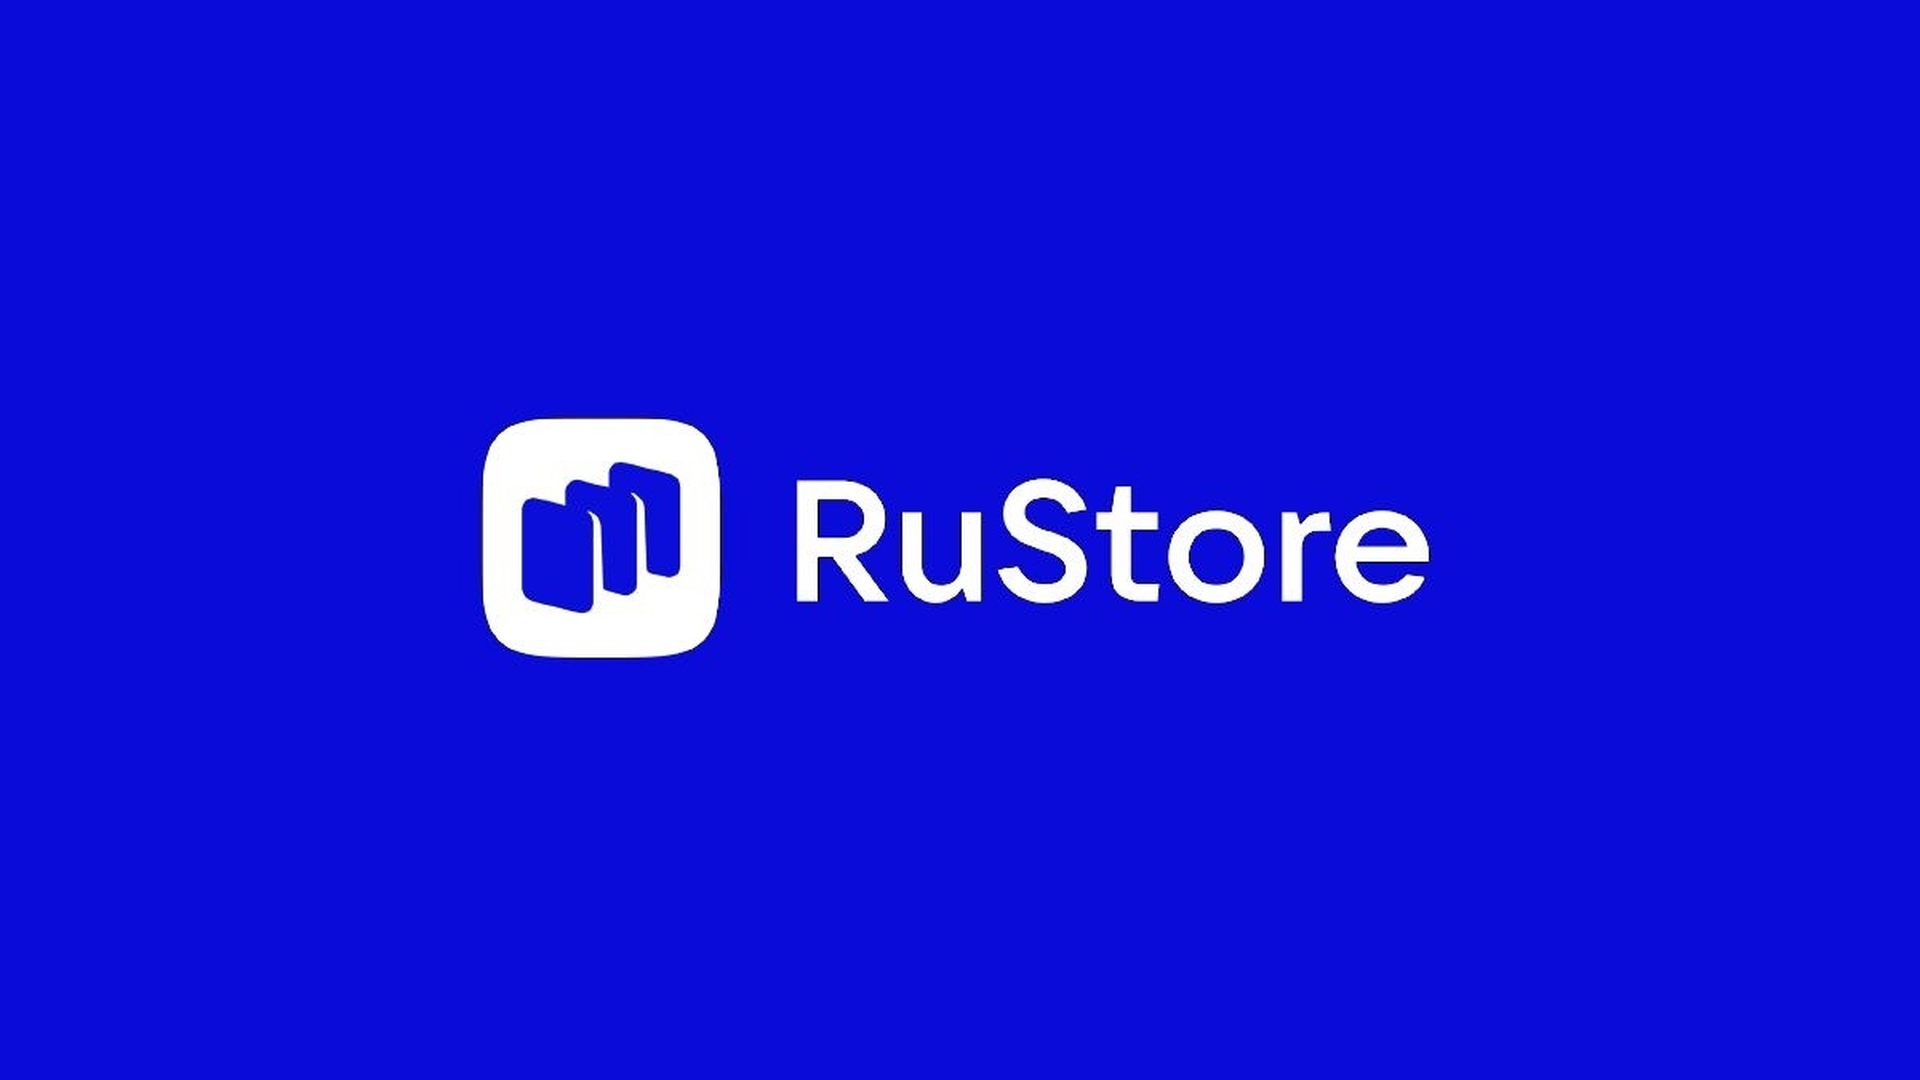 В этой статье мы расскажем, что такое RuStore, магазин приложений, разработанный ВКонтакте для замены западных альтернатив, таких как Google Play Store и App Store.